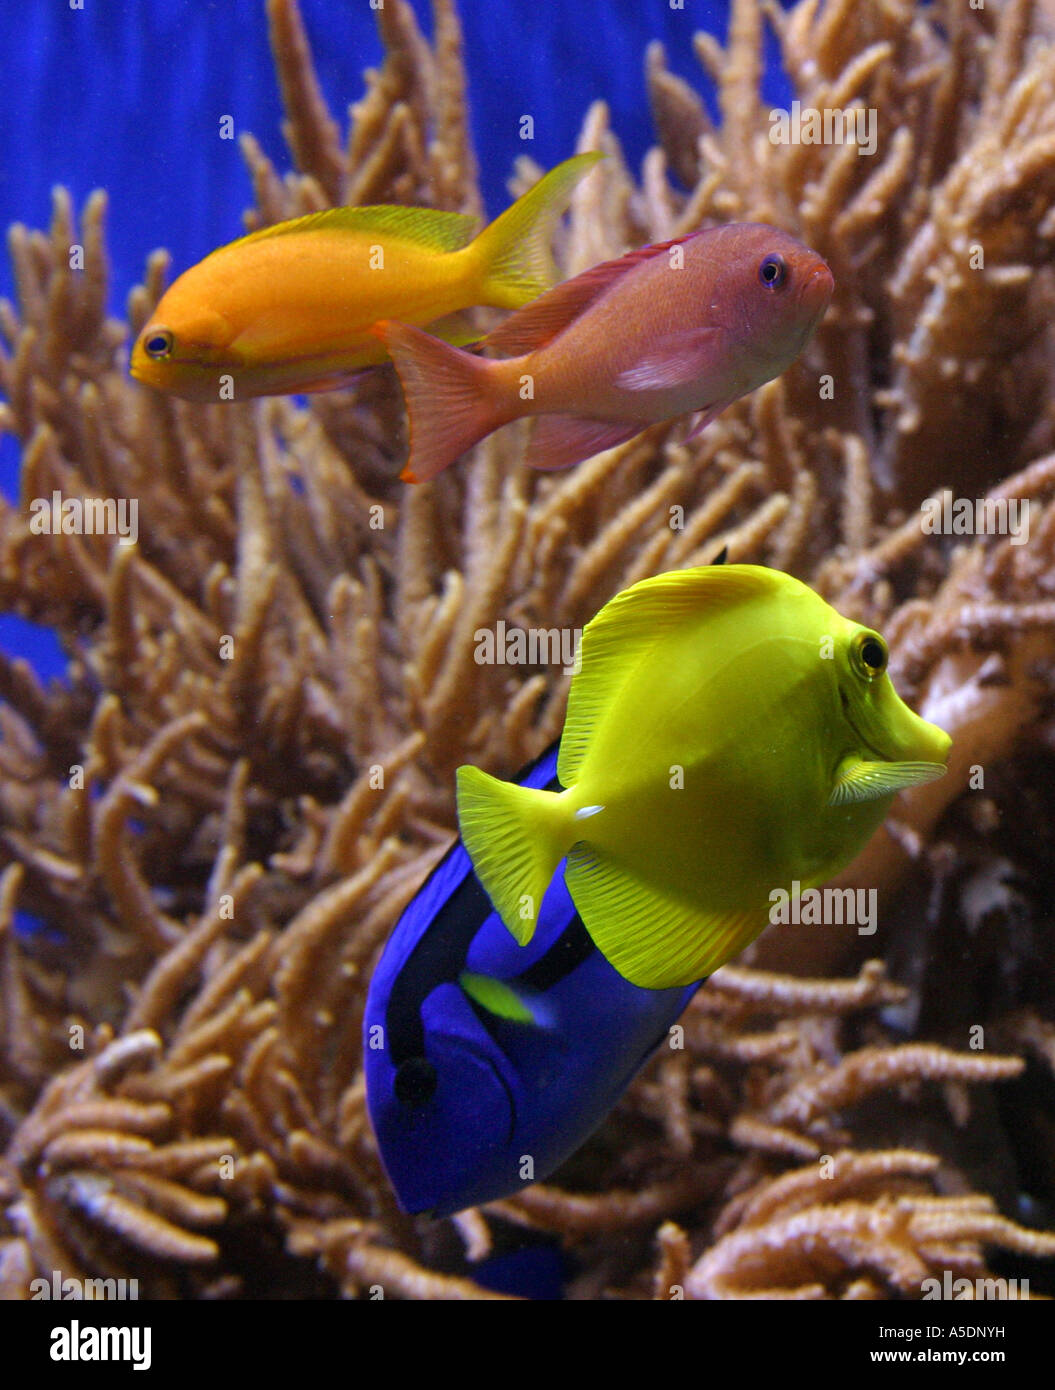 Colourful tropical fish in an aquarium Stock Photo